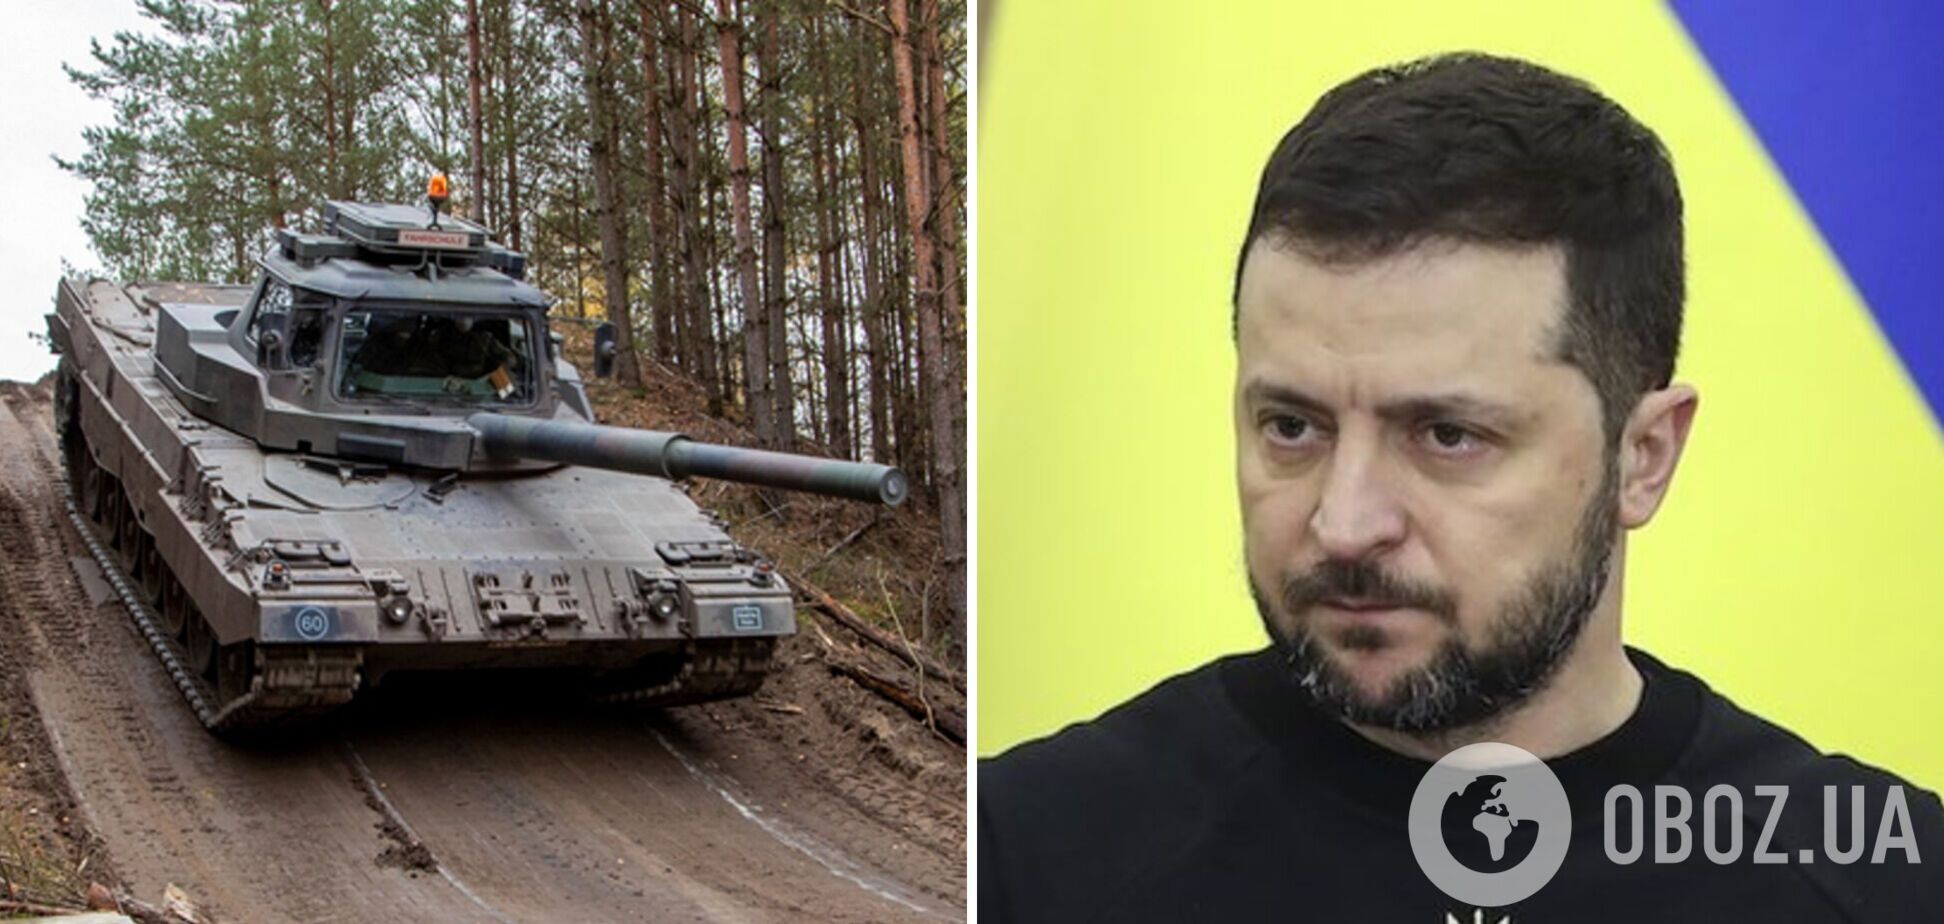 Сегодня день оборонных новостей для Украины, но за танки придется еще побороться, – Зеленский об итогах 'Рамштайна-8'